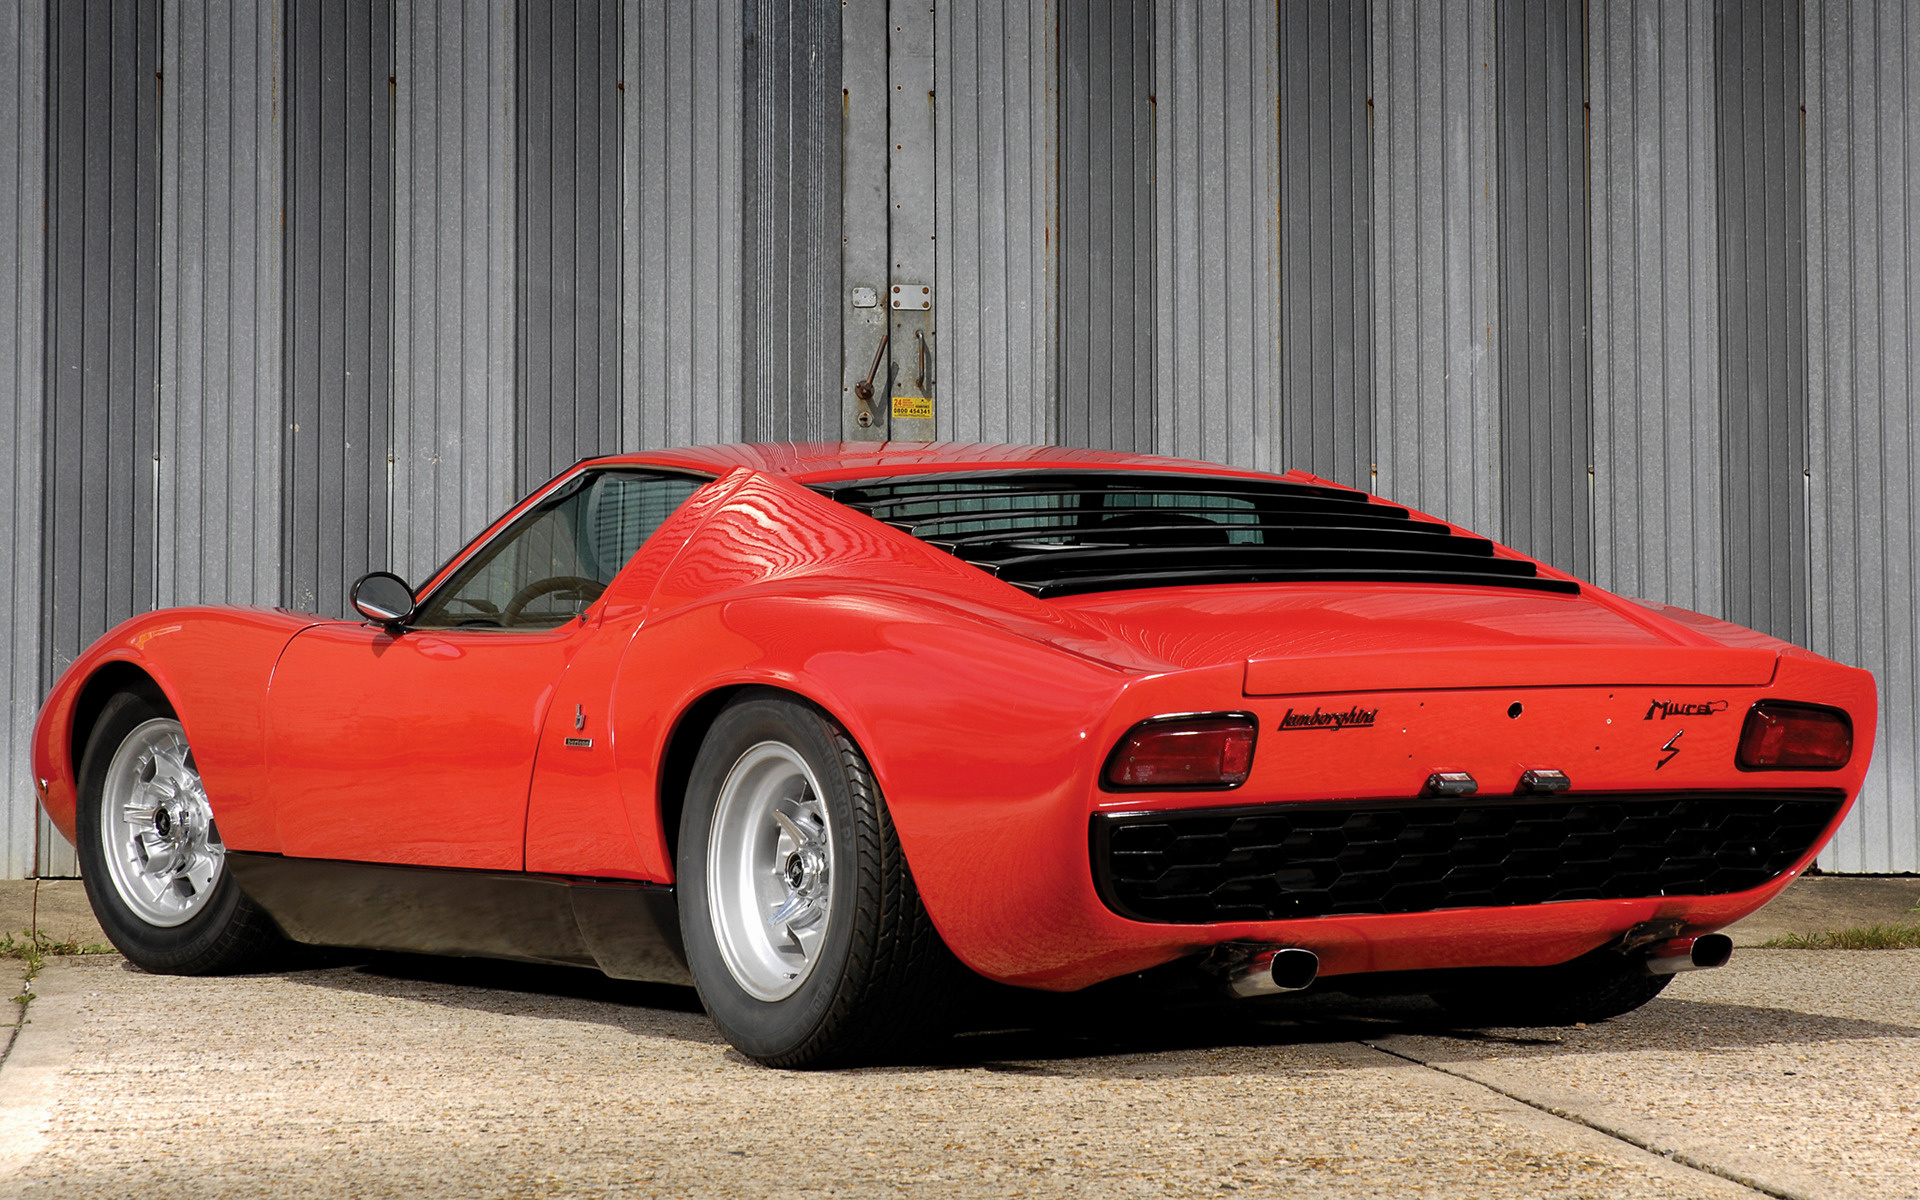 1968 Lamborghini Miura S - Wallpapers and HD Images | Car ...